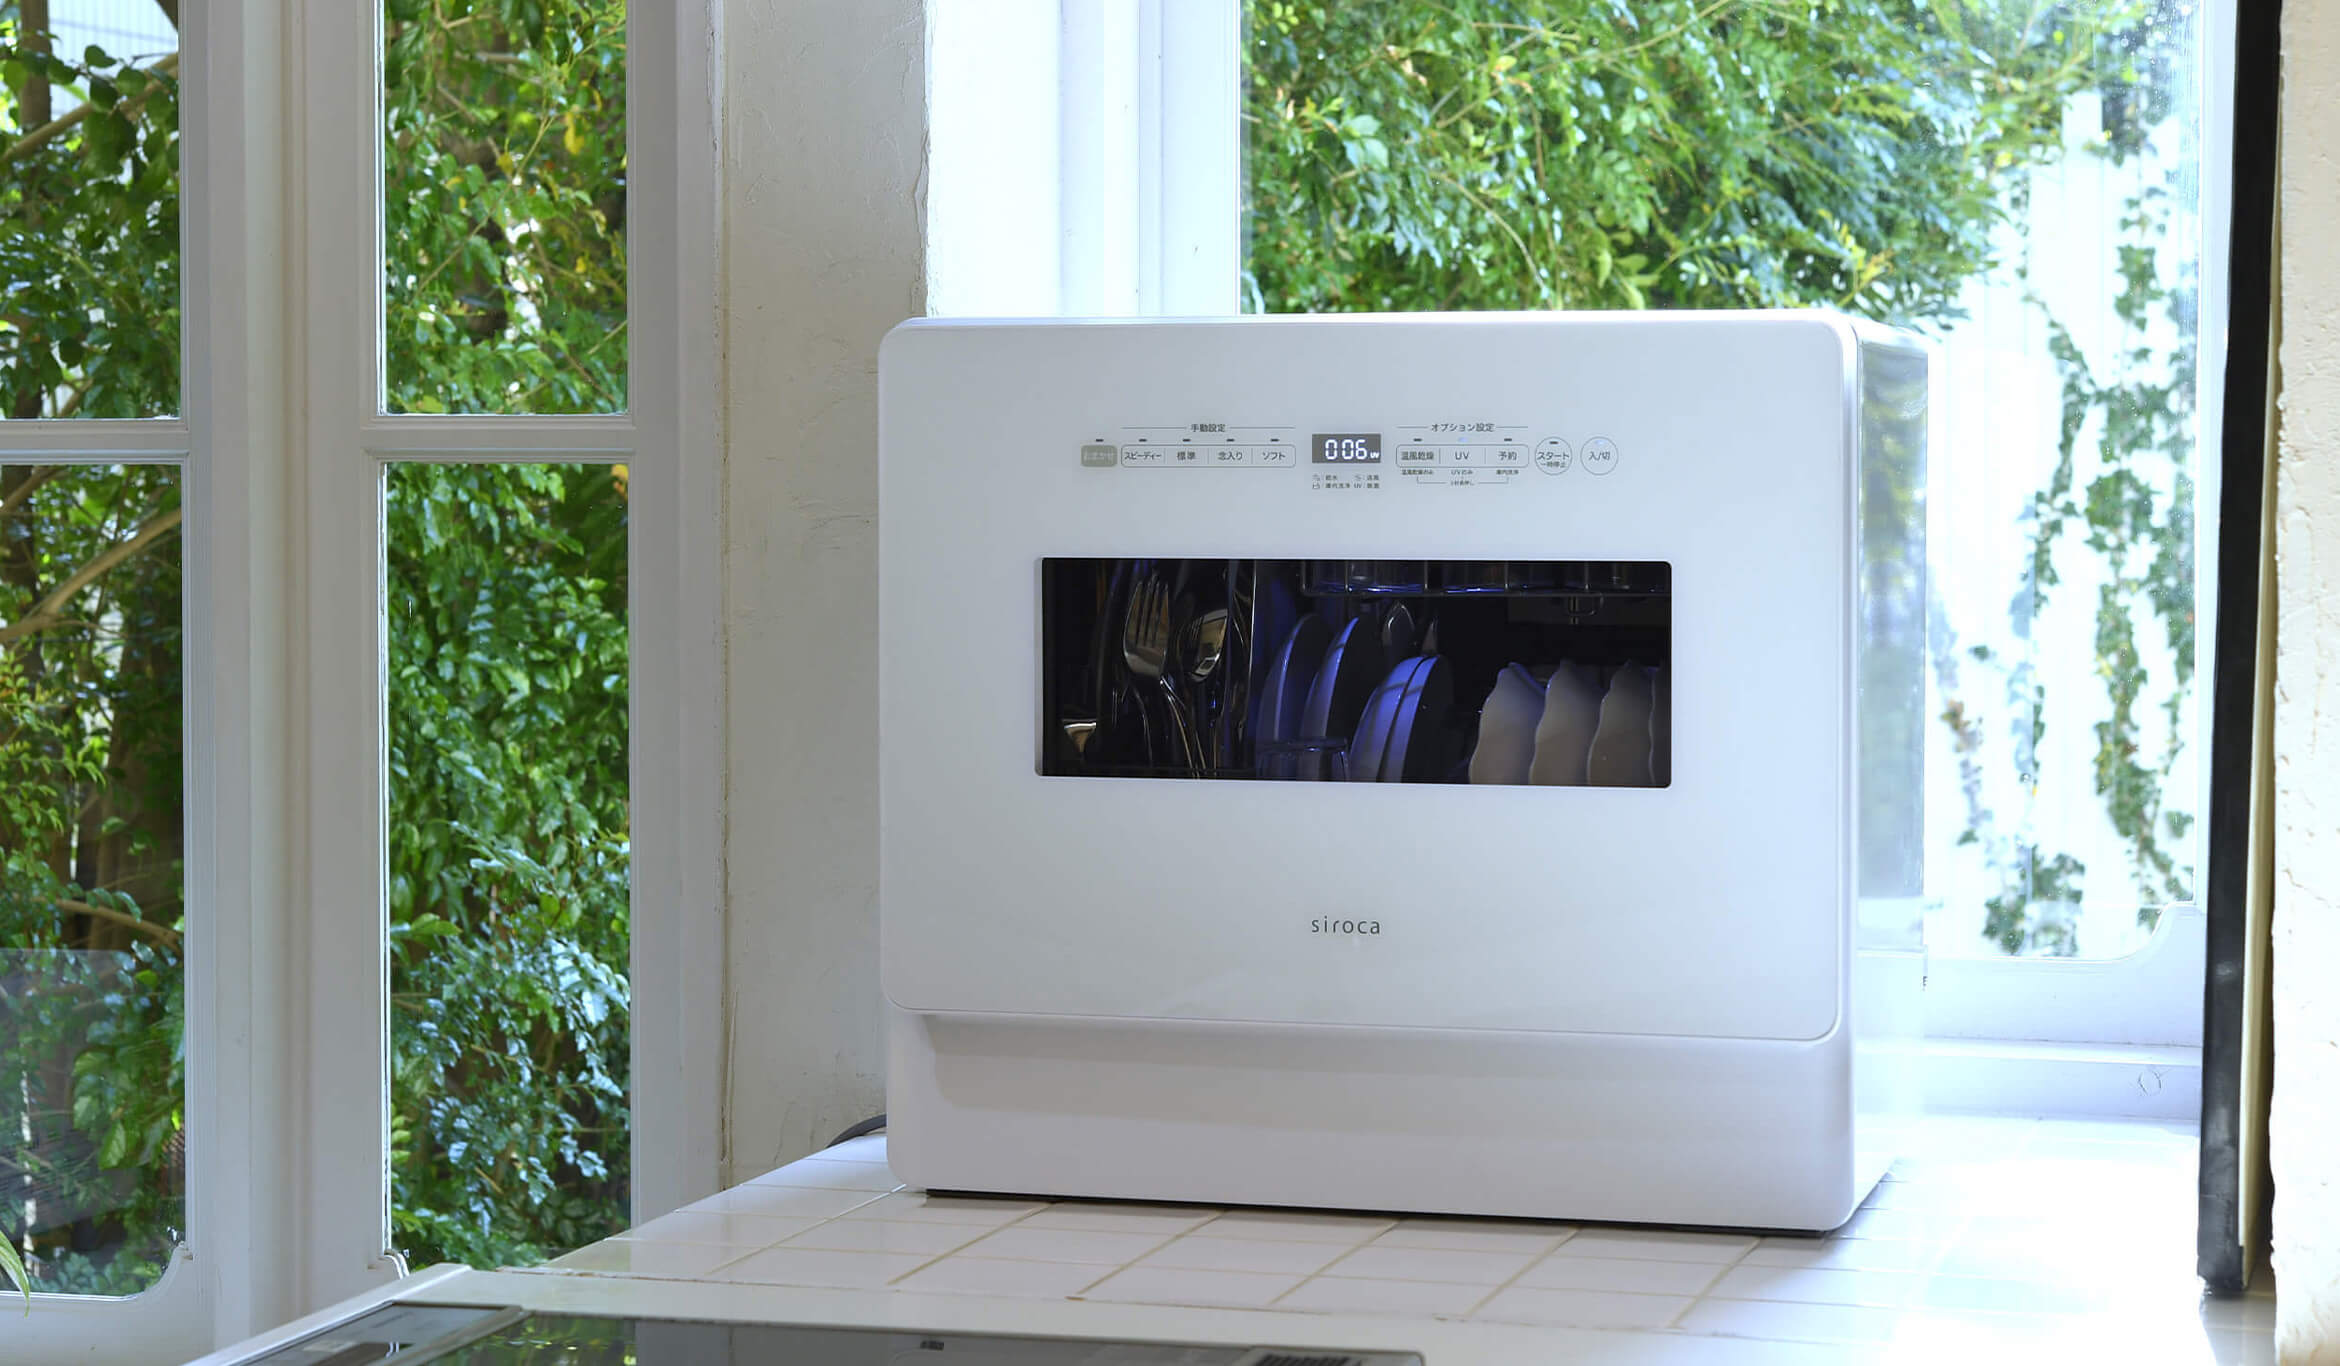 【9/1まで千円引】【新品・未使用】シロカ 食器洗い乾燥機　SS-M151